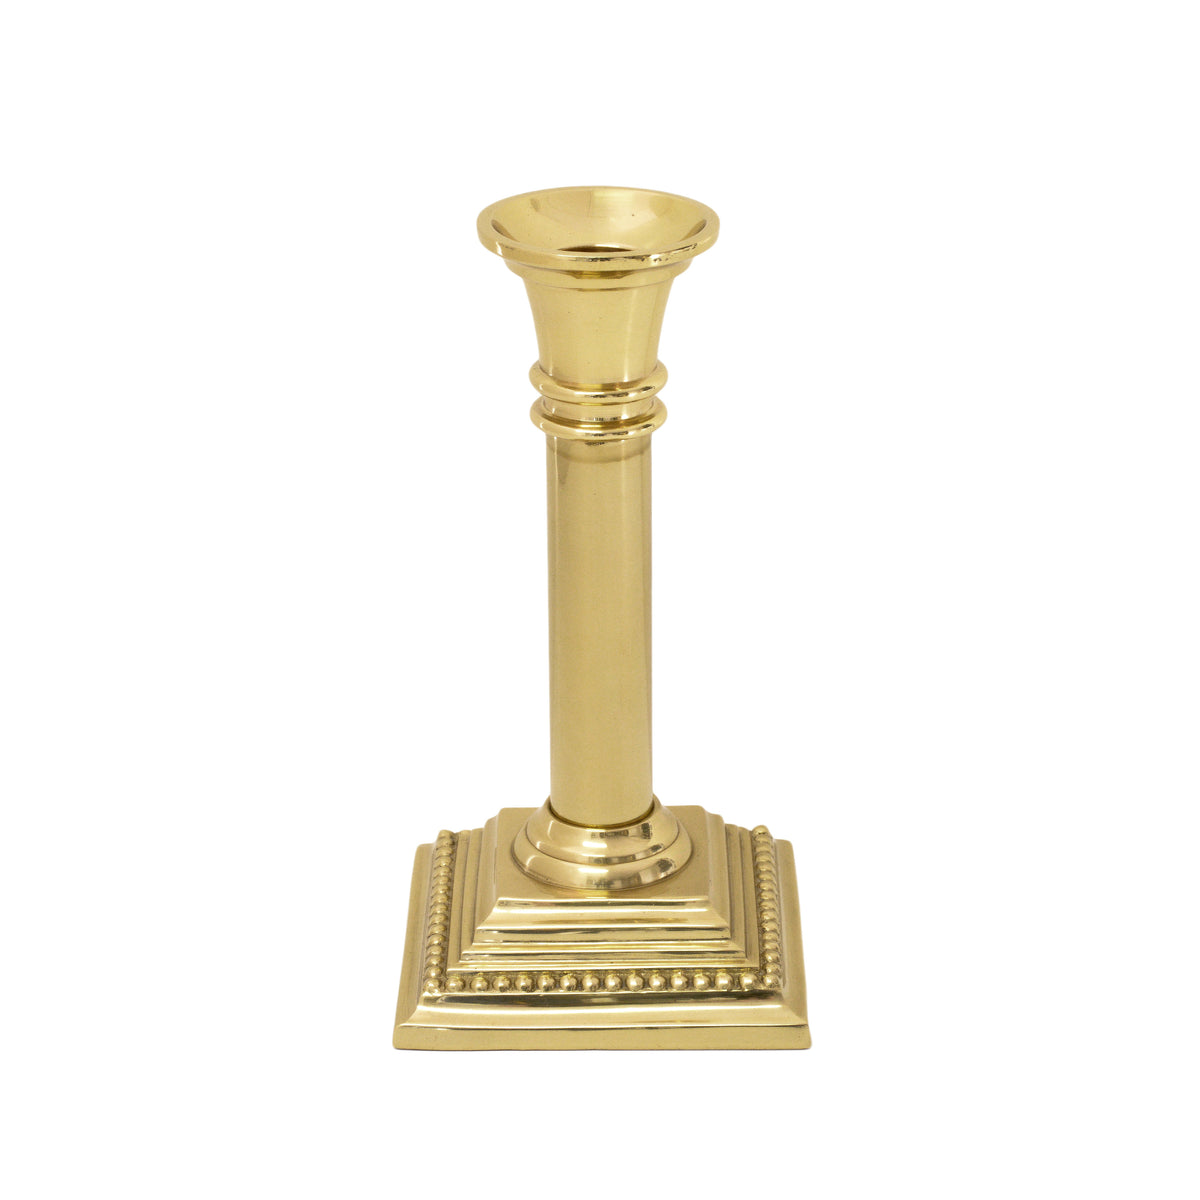 Biedermann & Sons Brass Candlestick Holders (Box of 6), 3.75